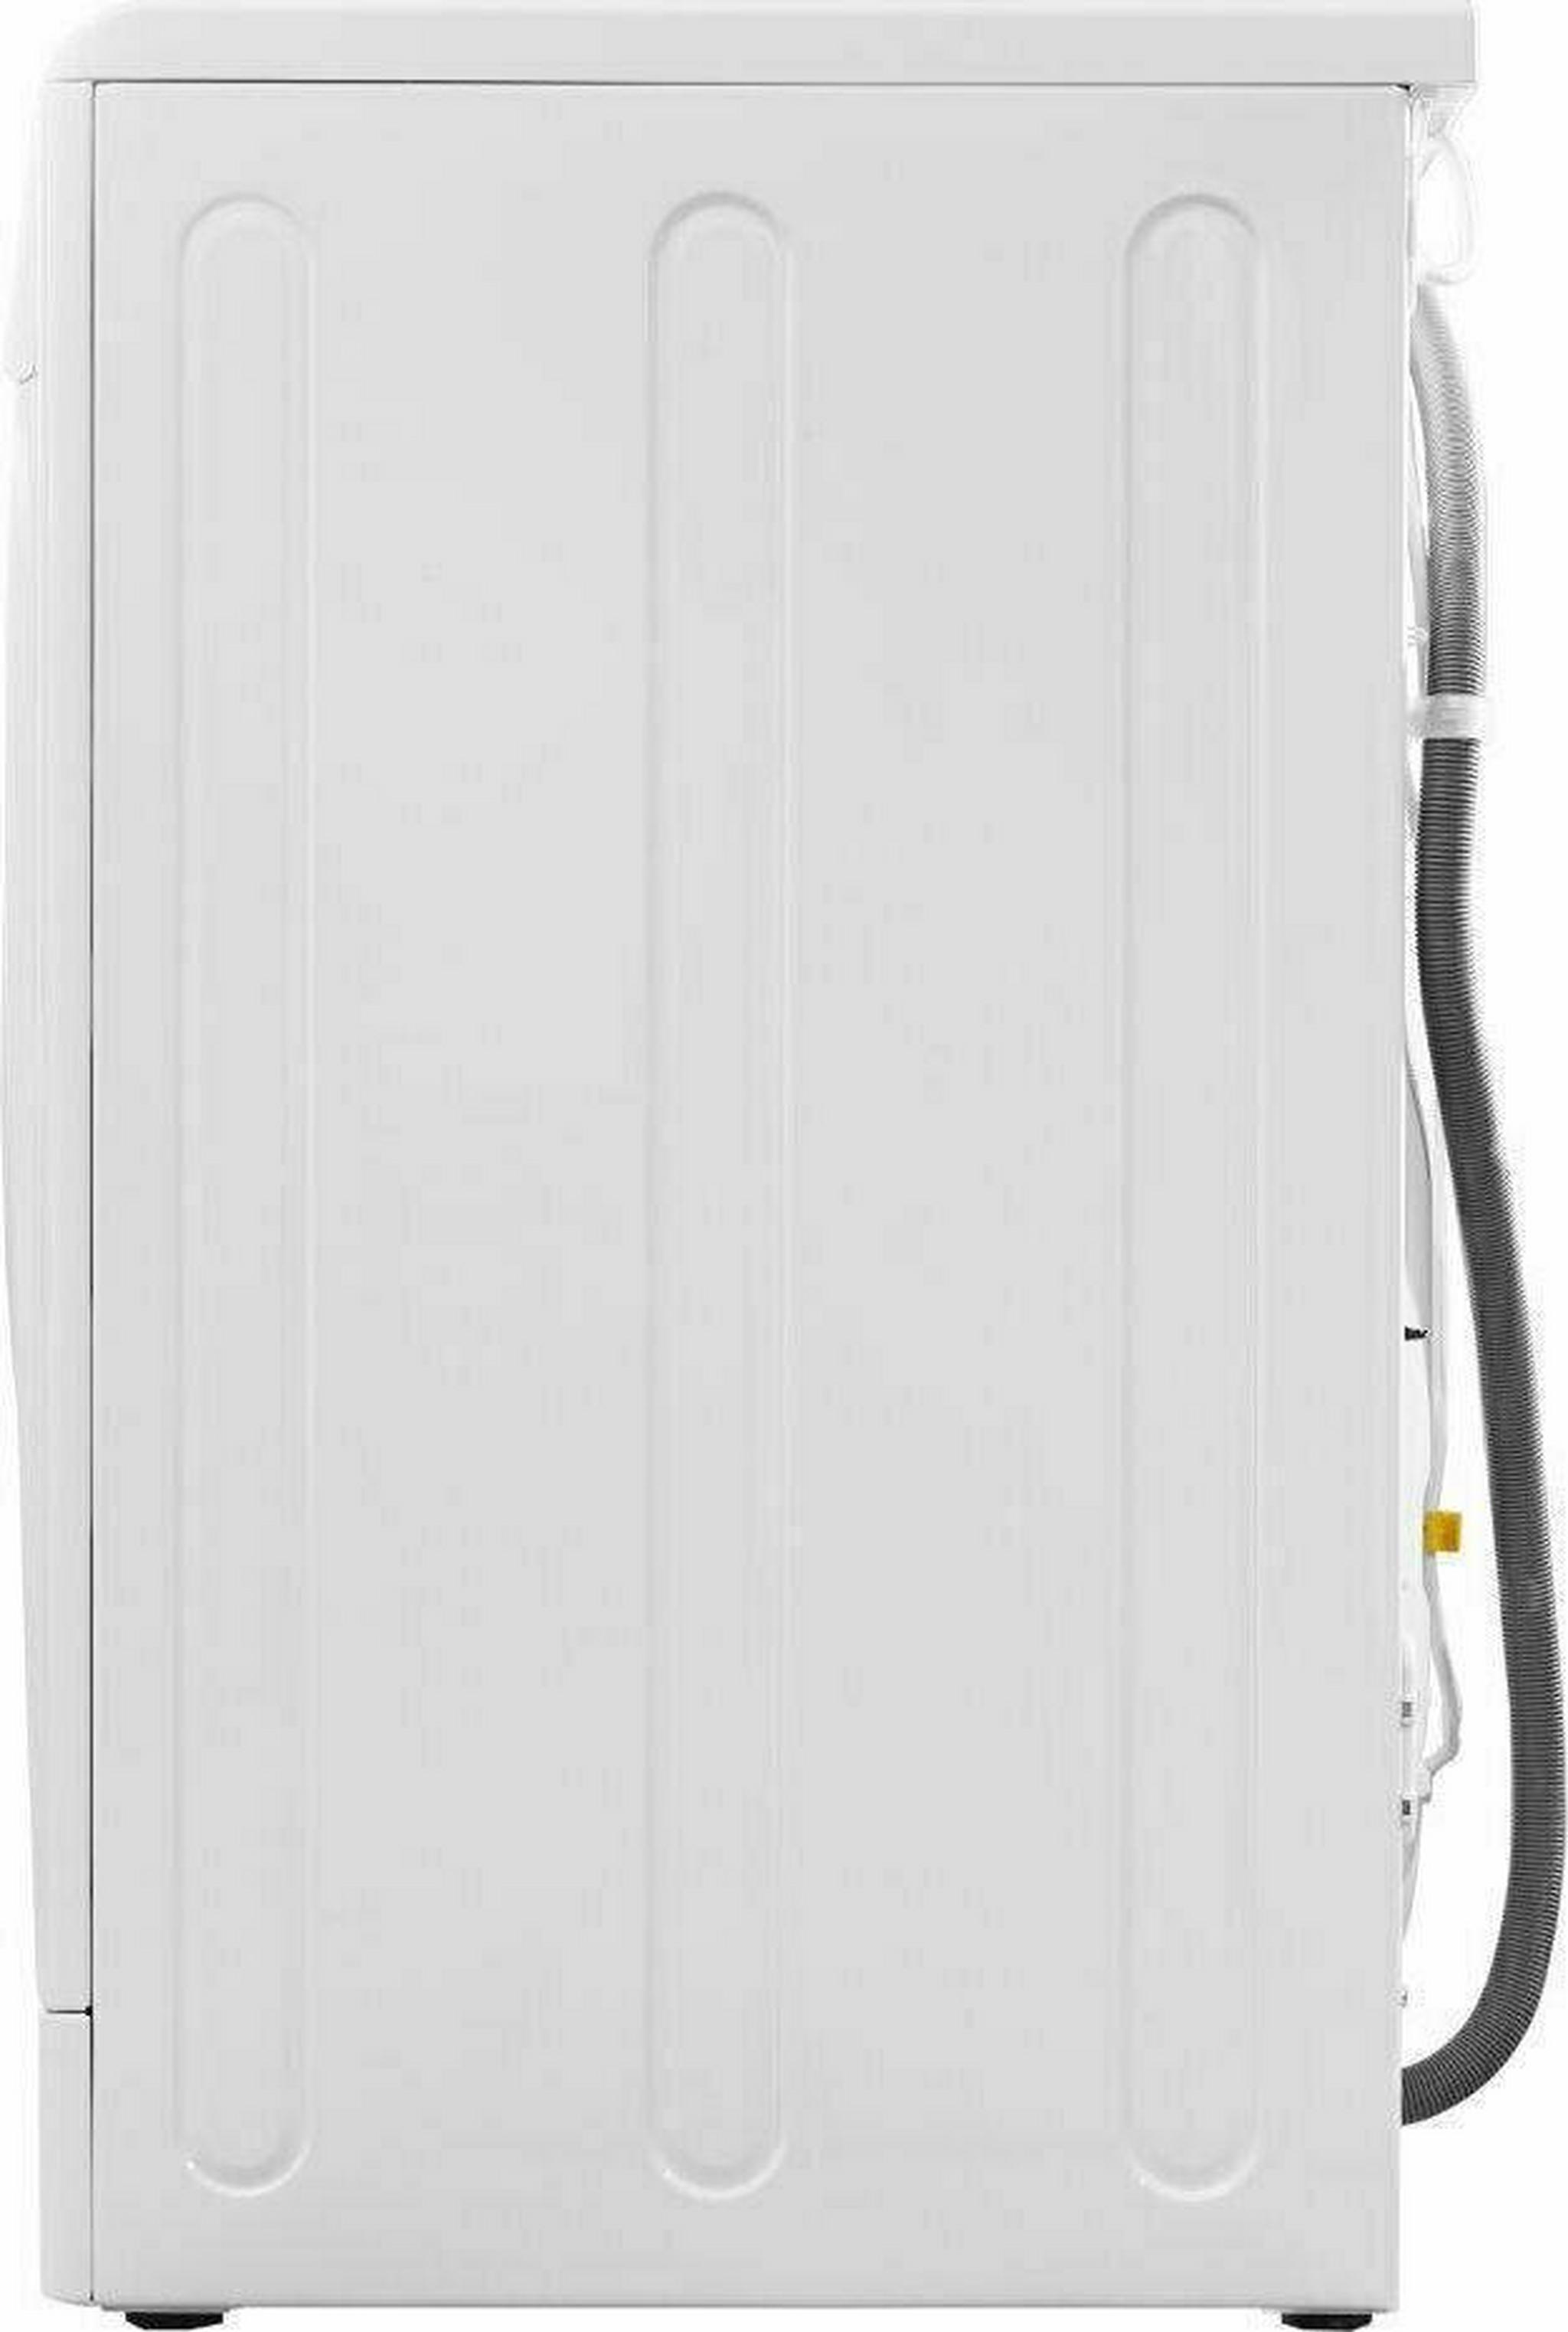 Indesit Washer/Dryer - 9/6kg (XWDE 961480X)  - White